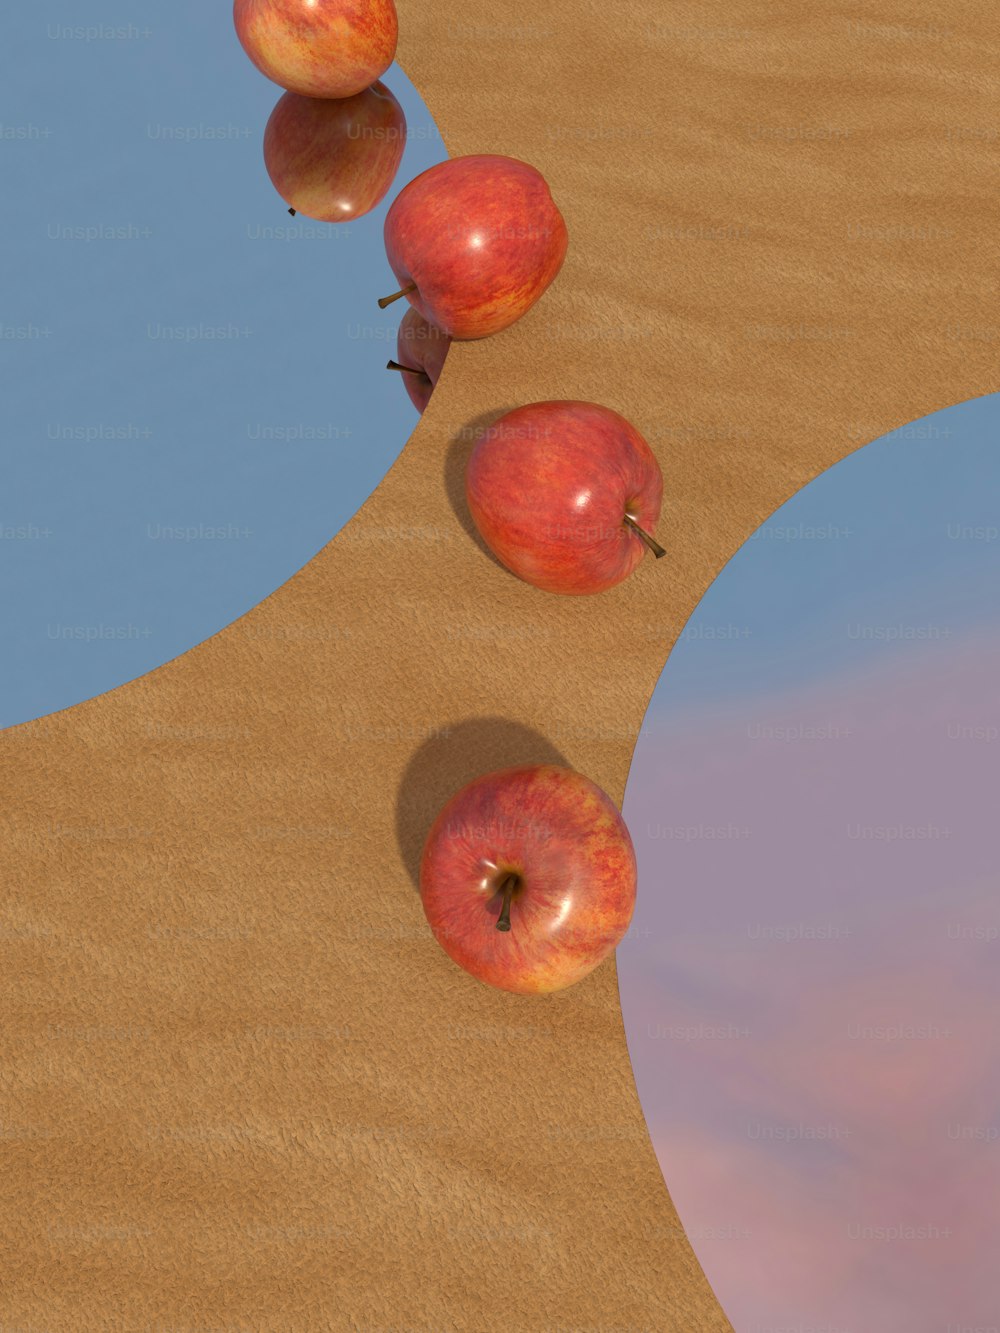 모래 사장 위에 앉아 있는 사과 무리